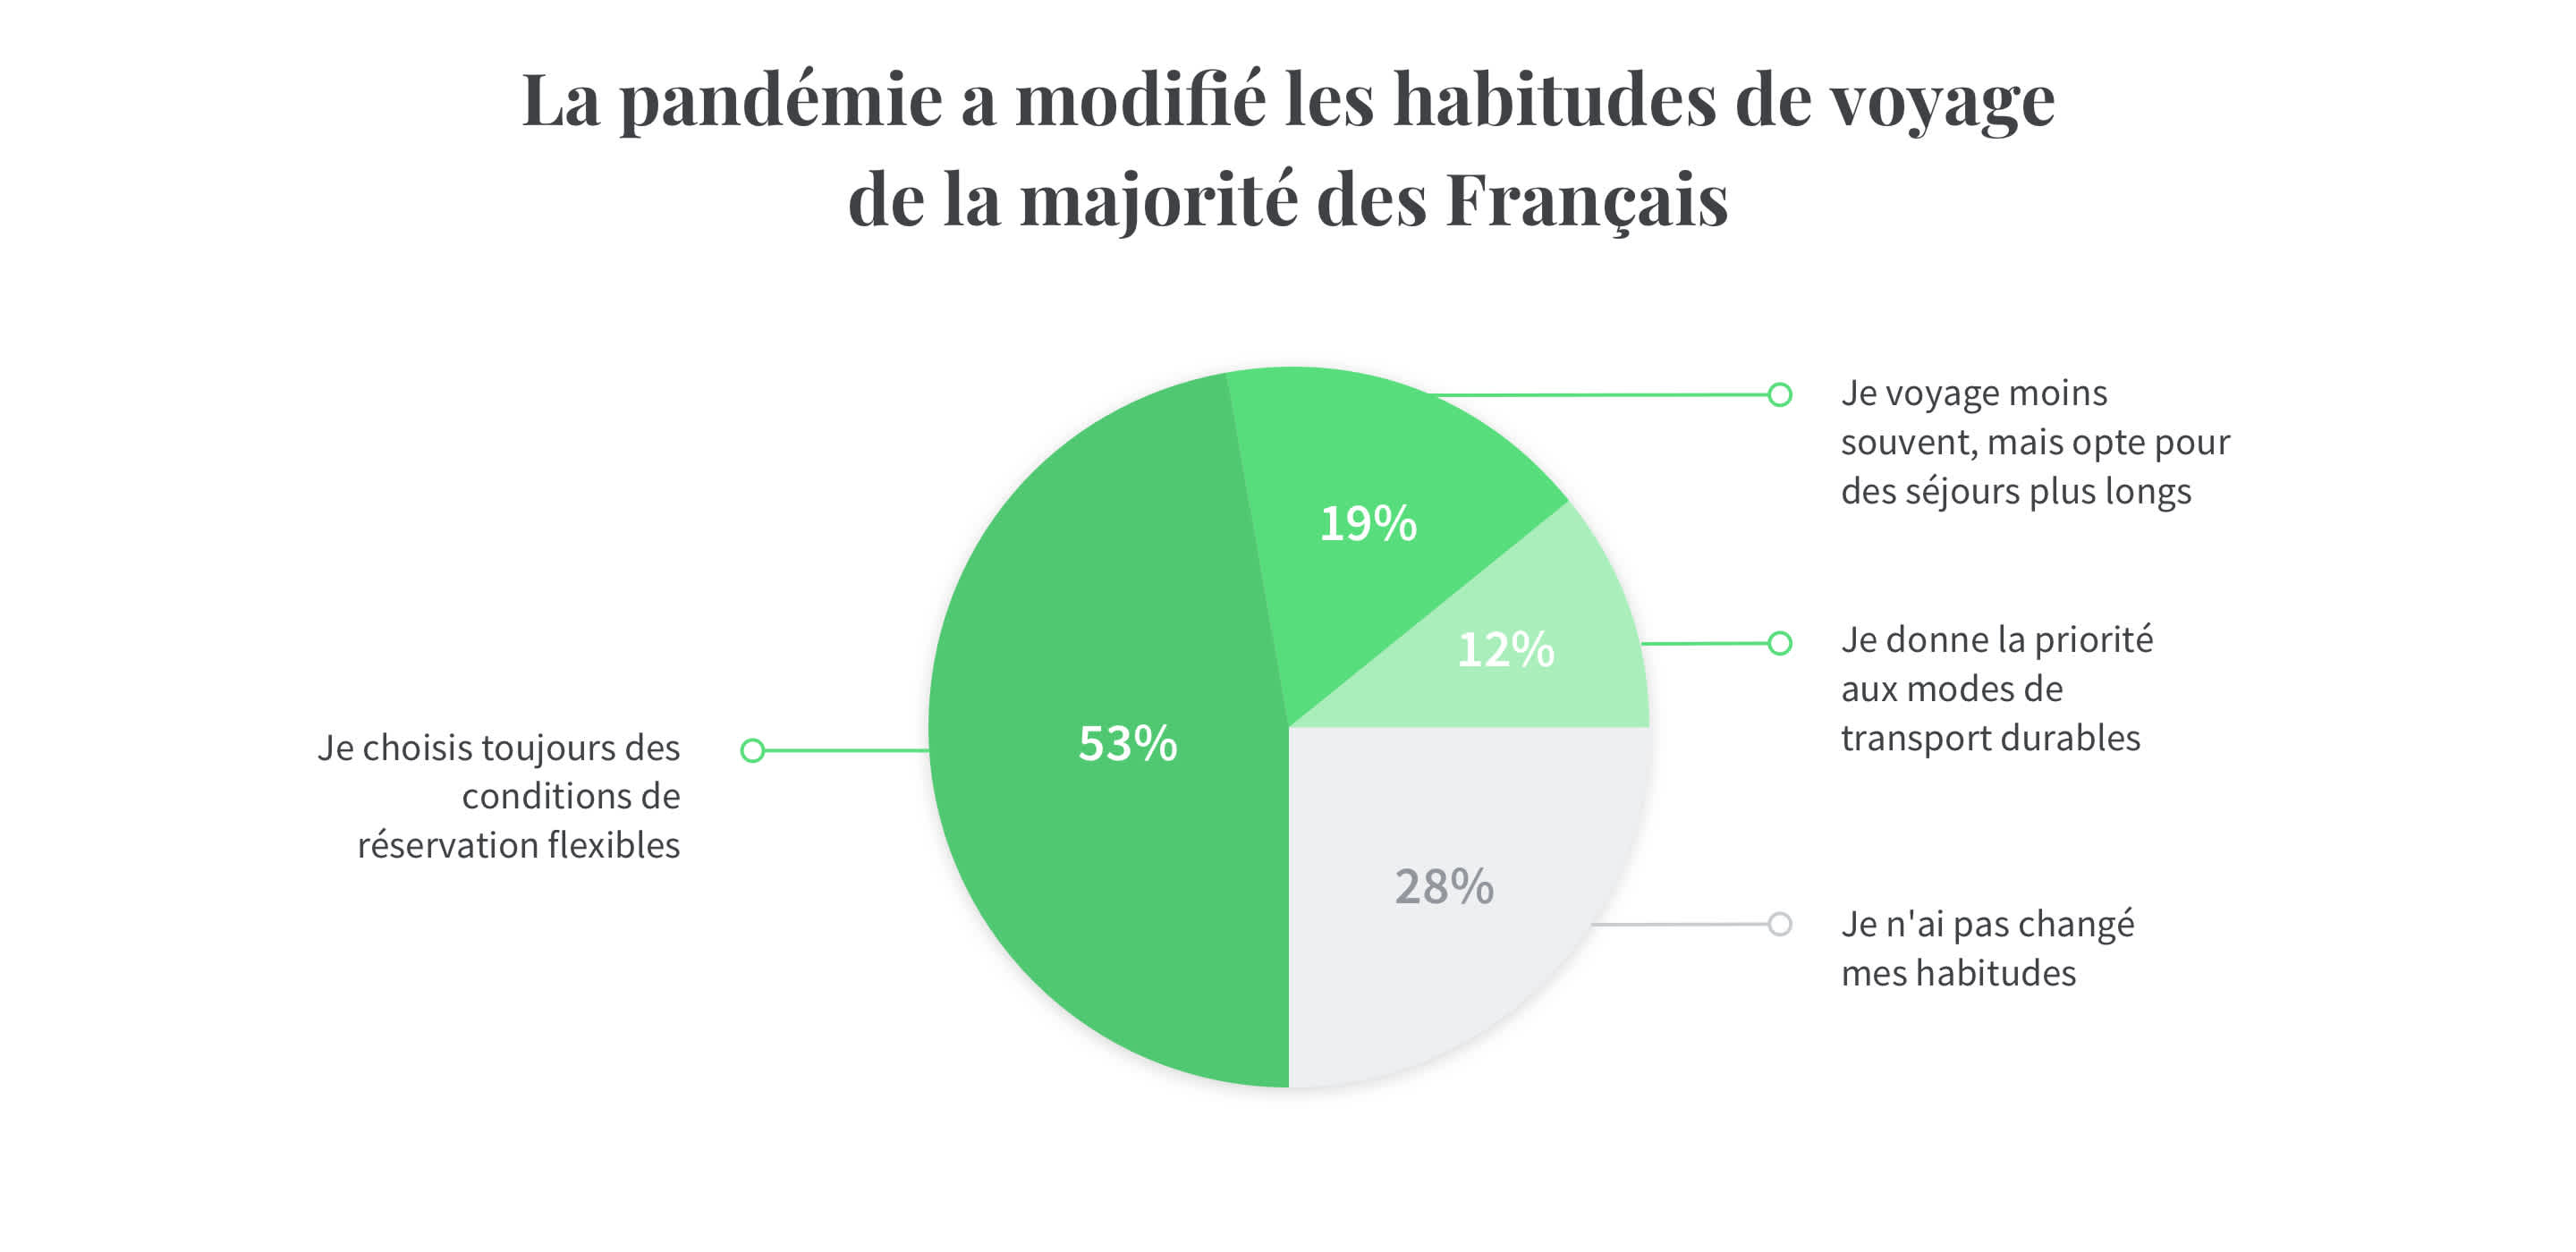 La majorité des français ont vu leurs habitudes de voyage modifiées avec la crise